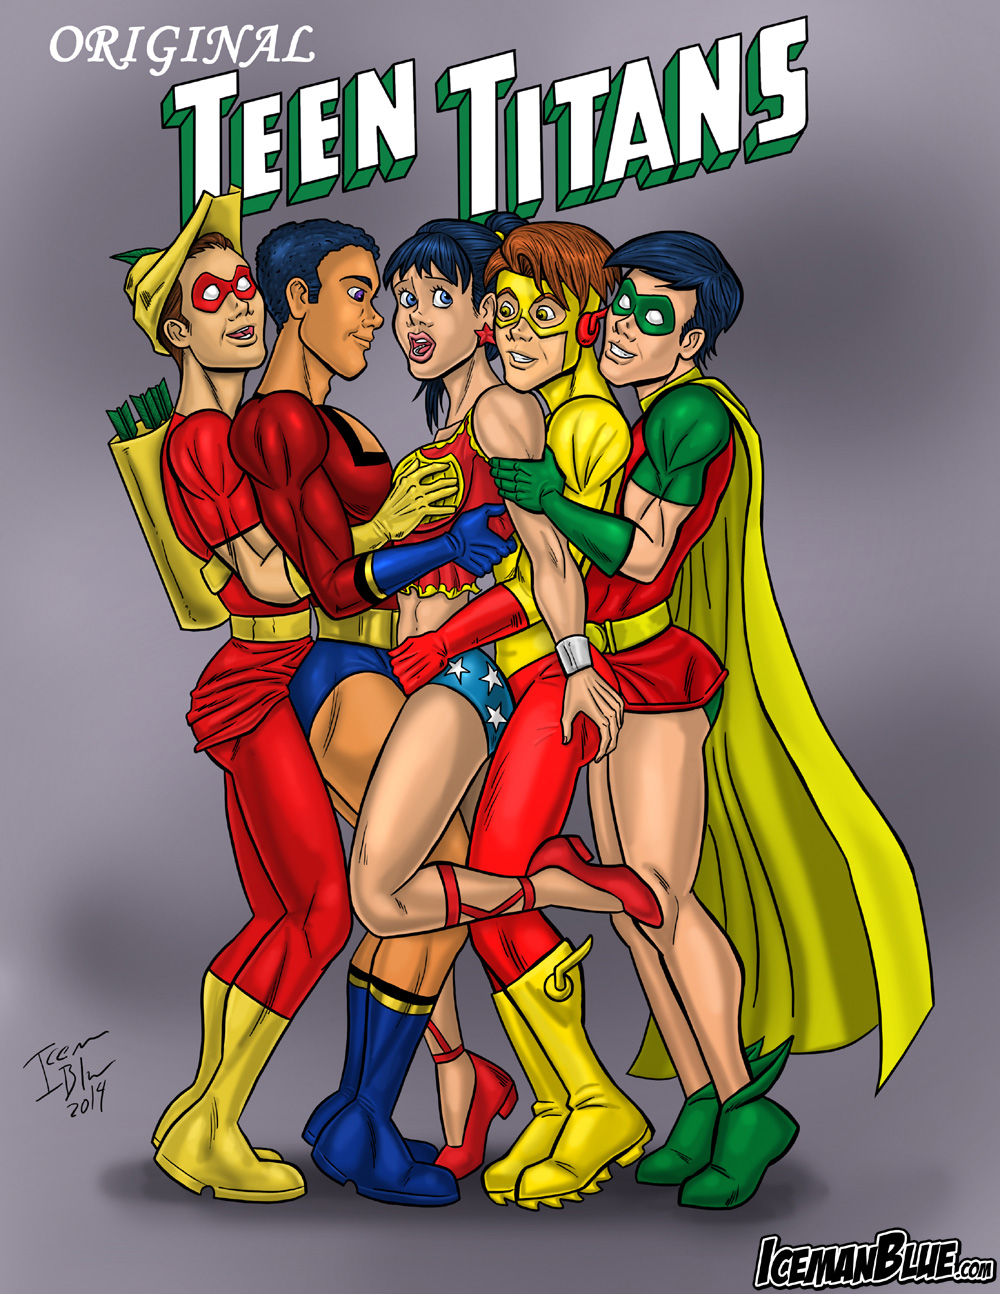 Original Teen Titans00